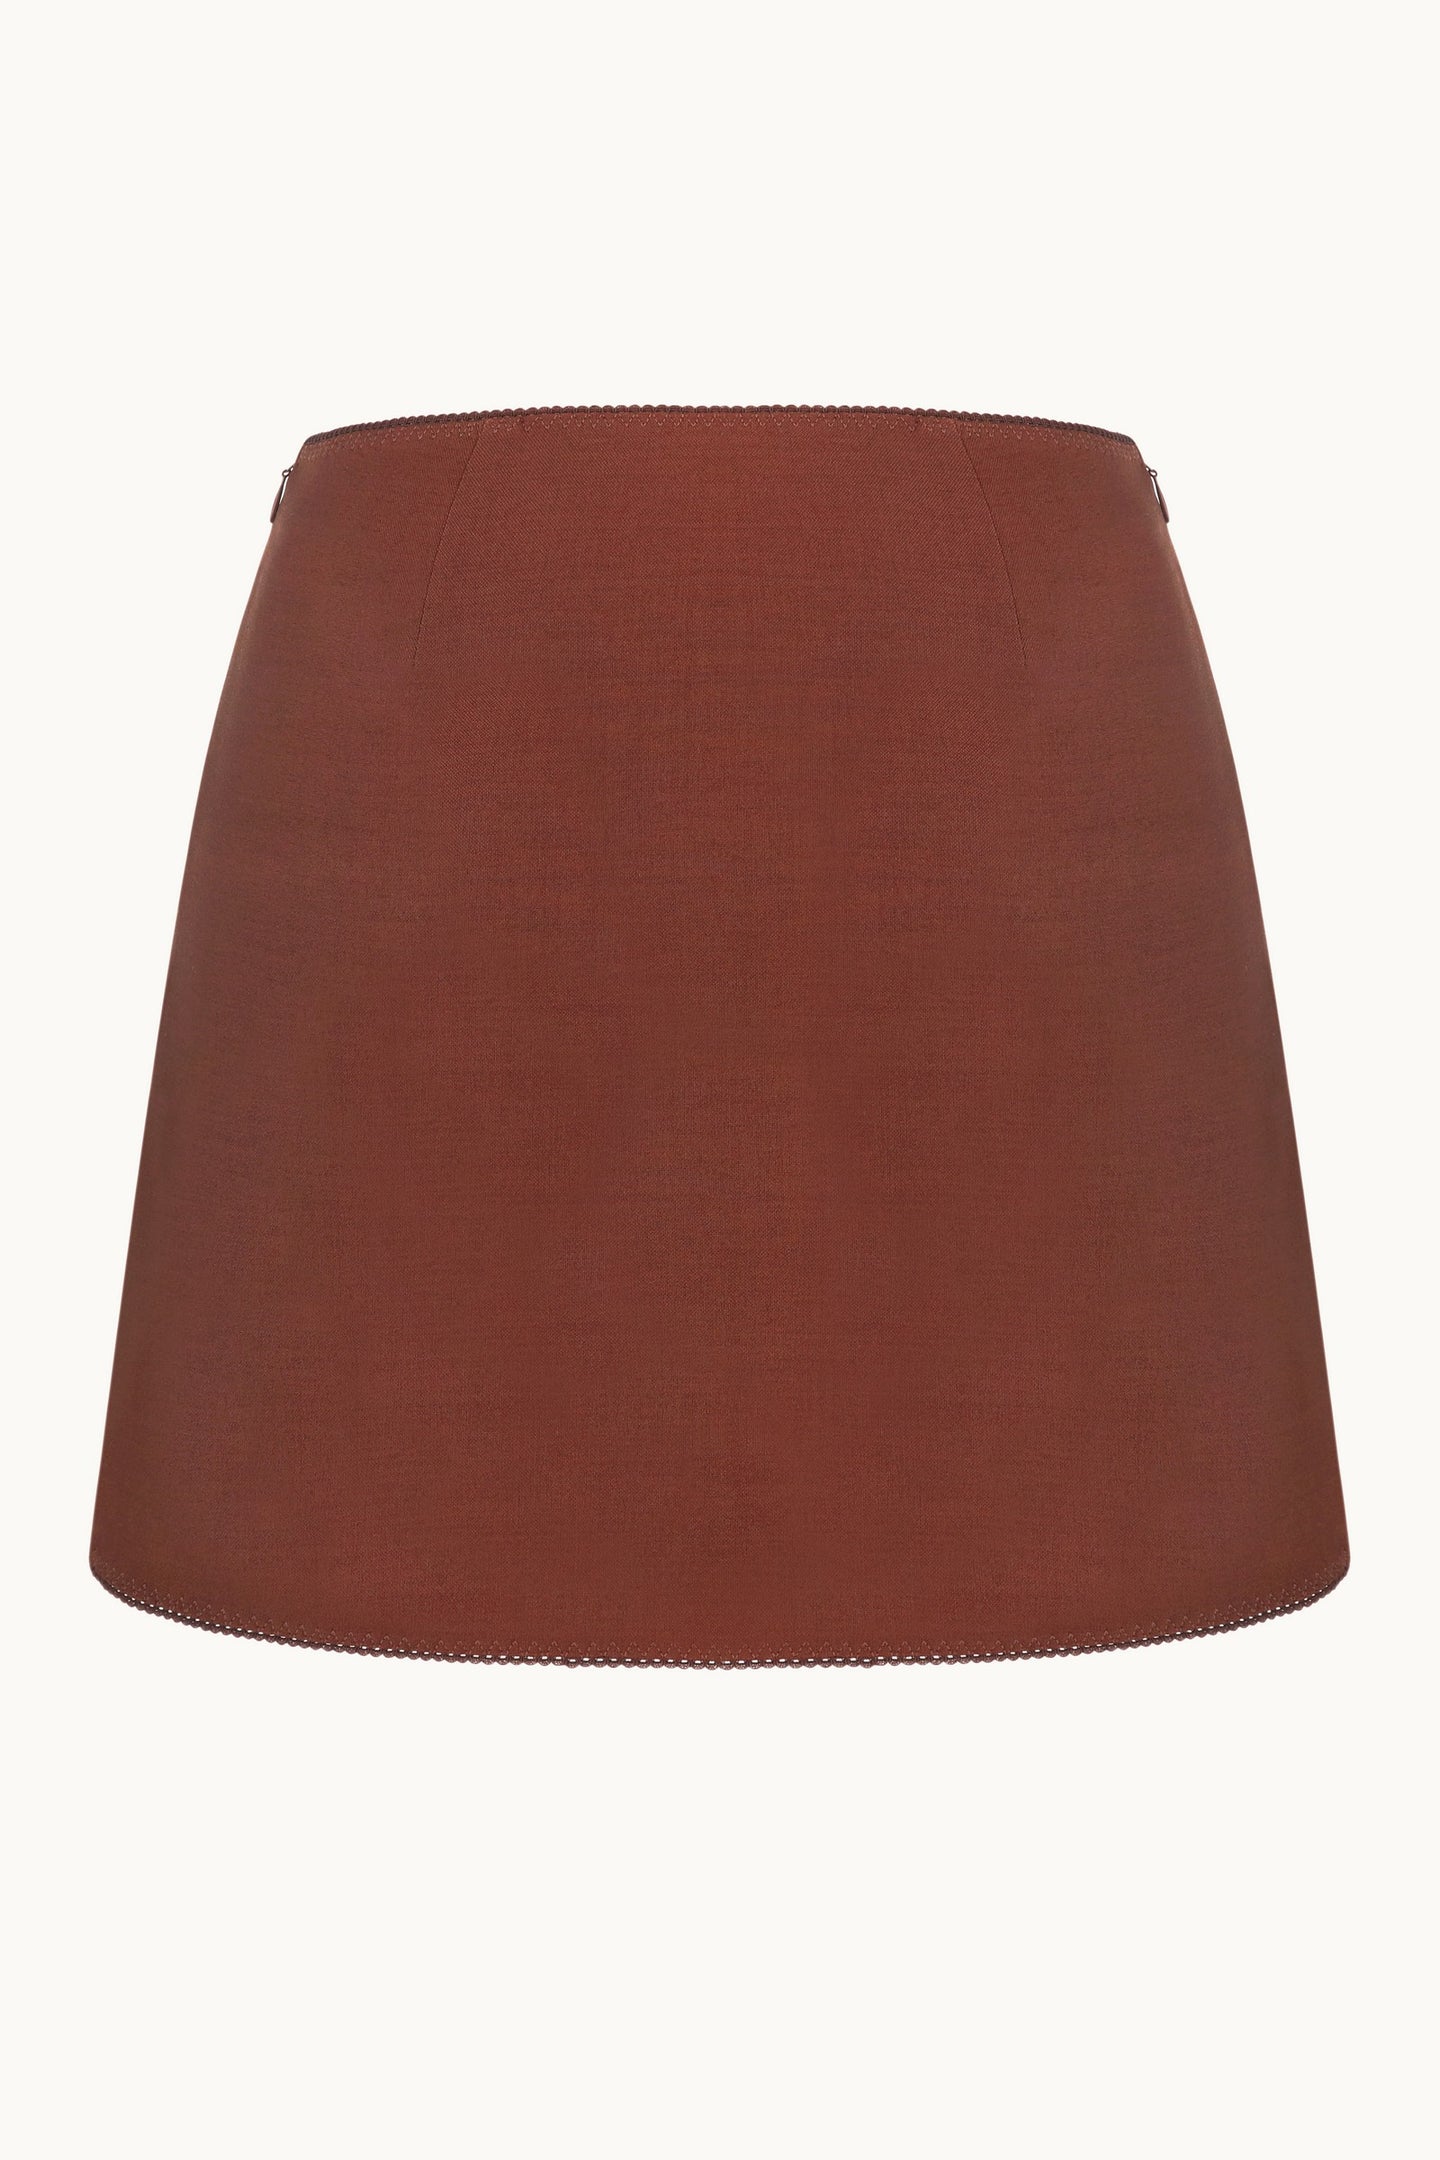 Anaïs brown skirt back view